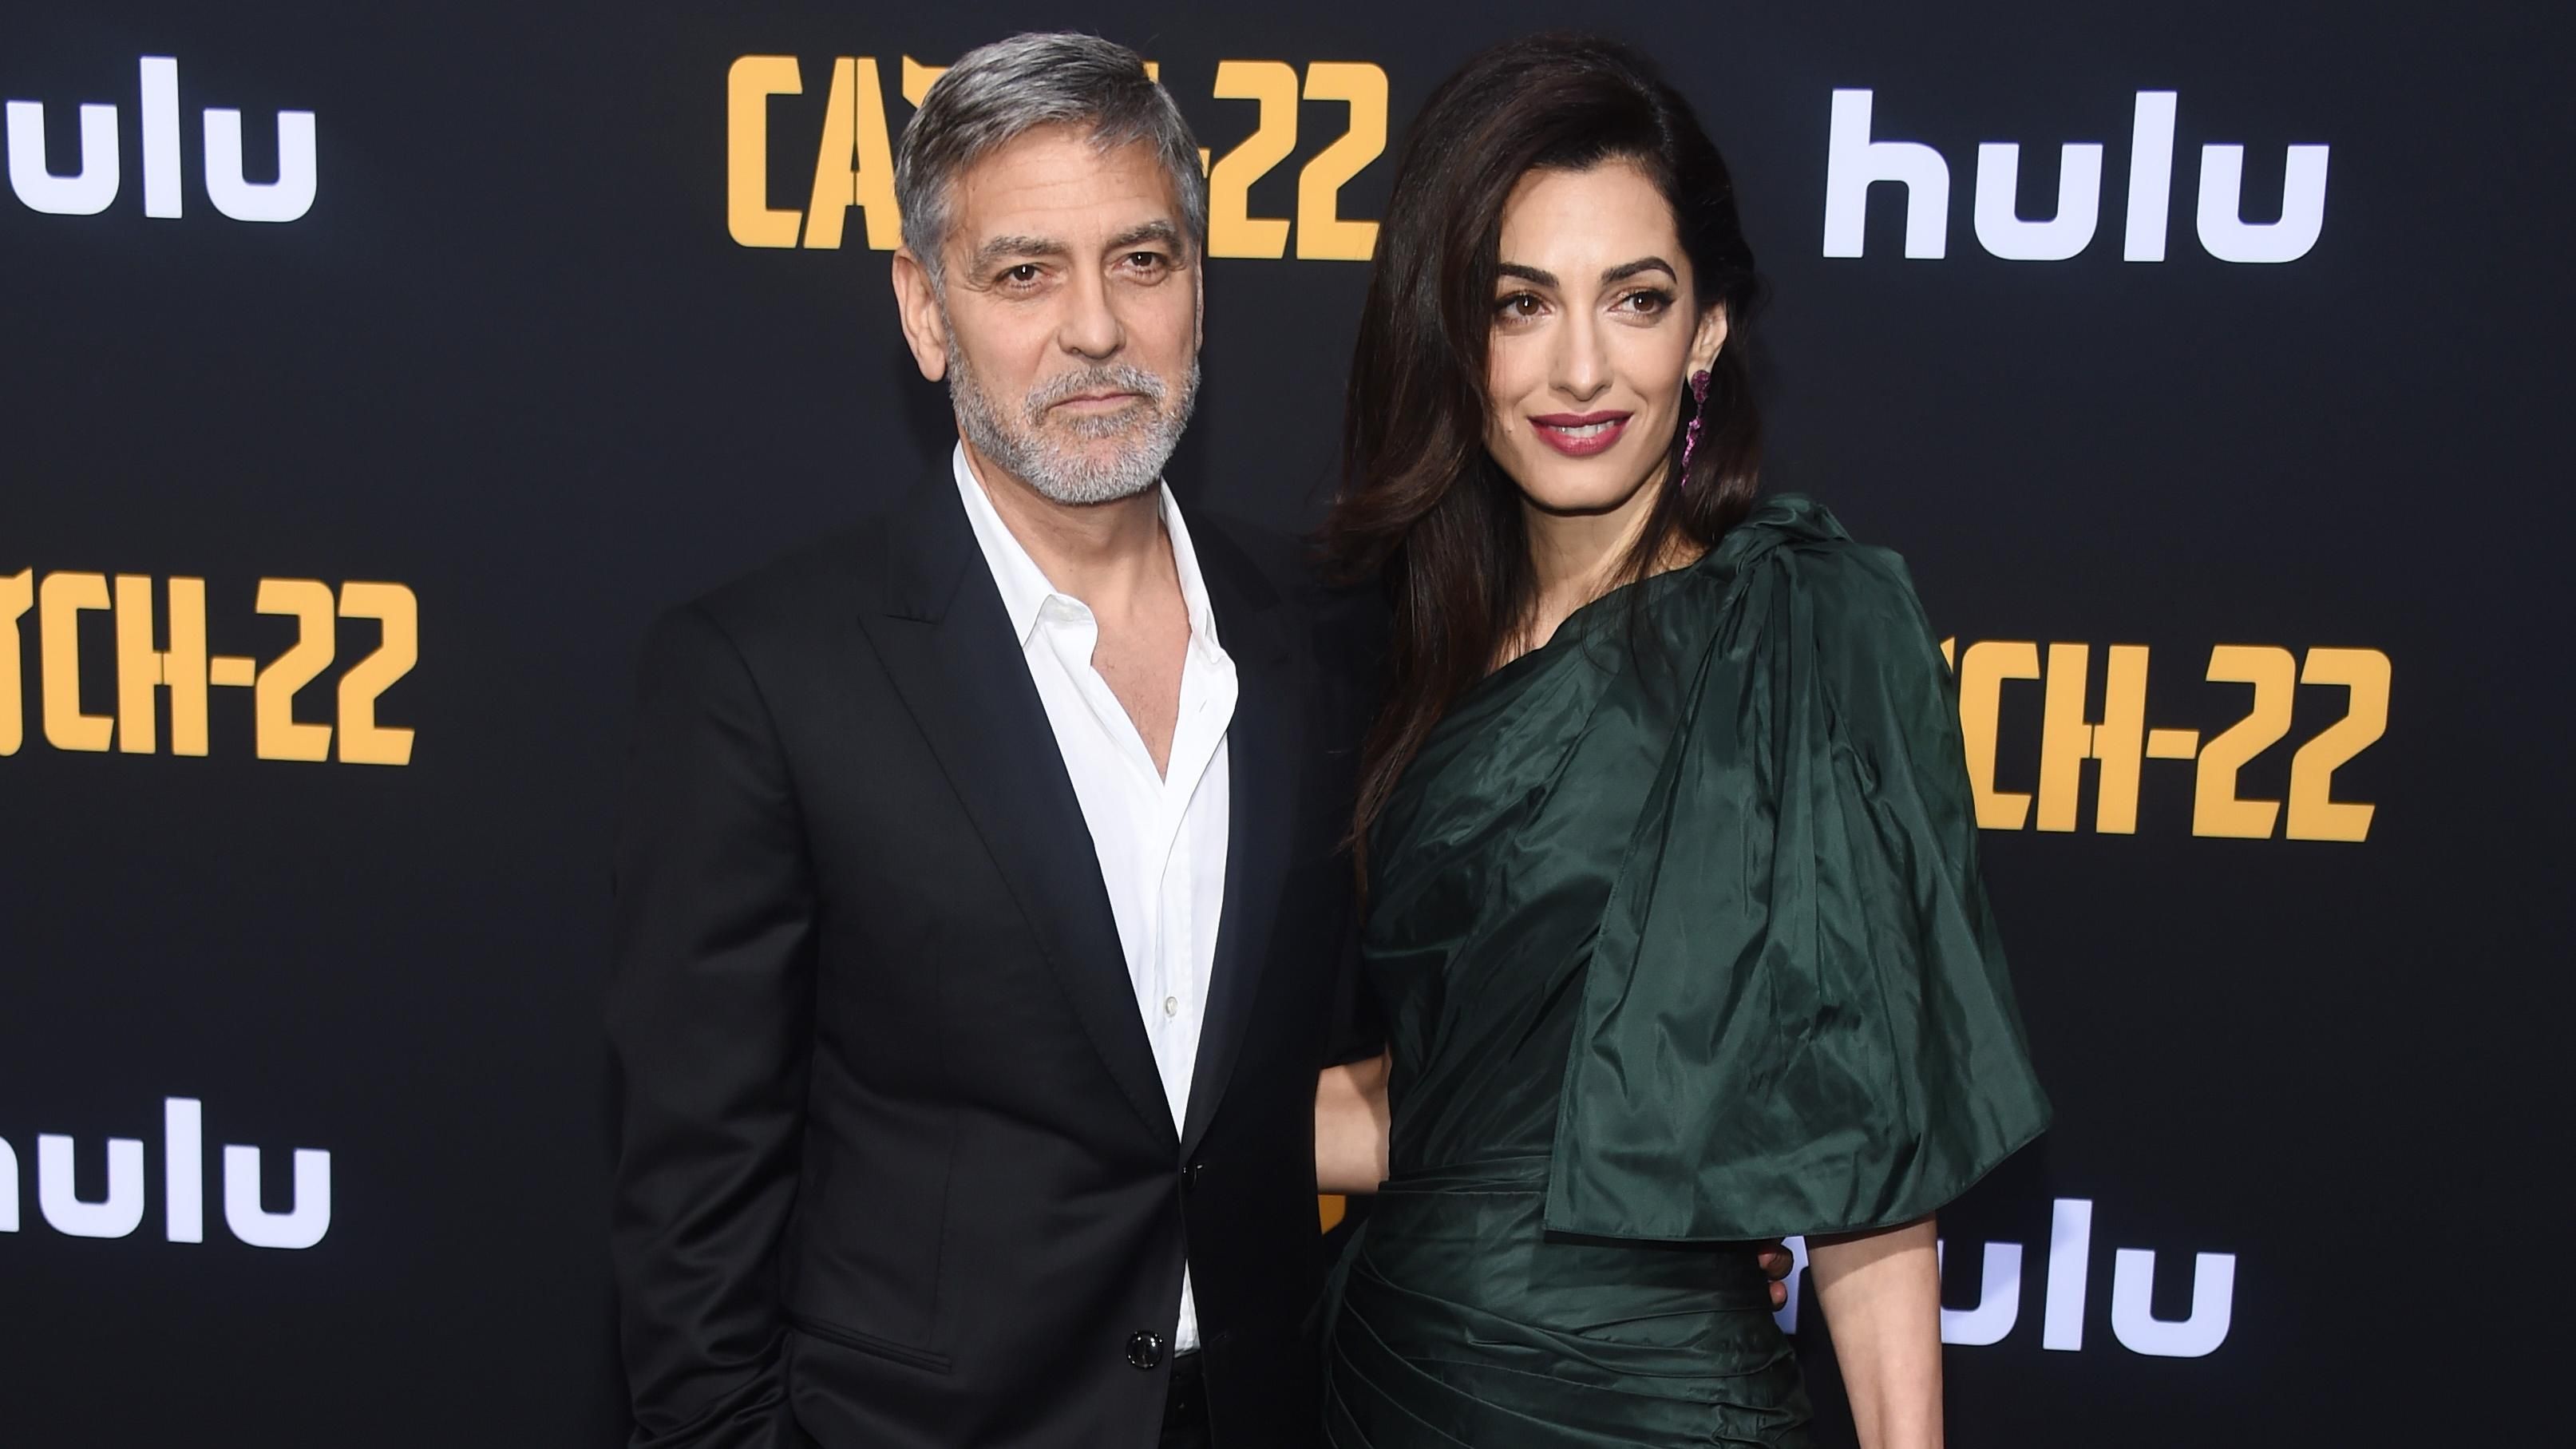 Щасливі разом: закохані Амаль та Джордж Клуні відвідали прем'єру серіалу